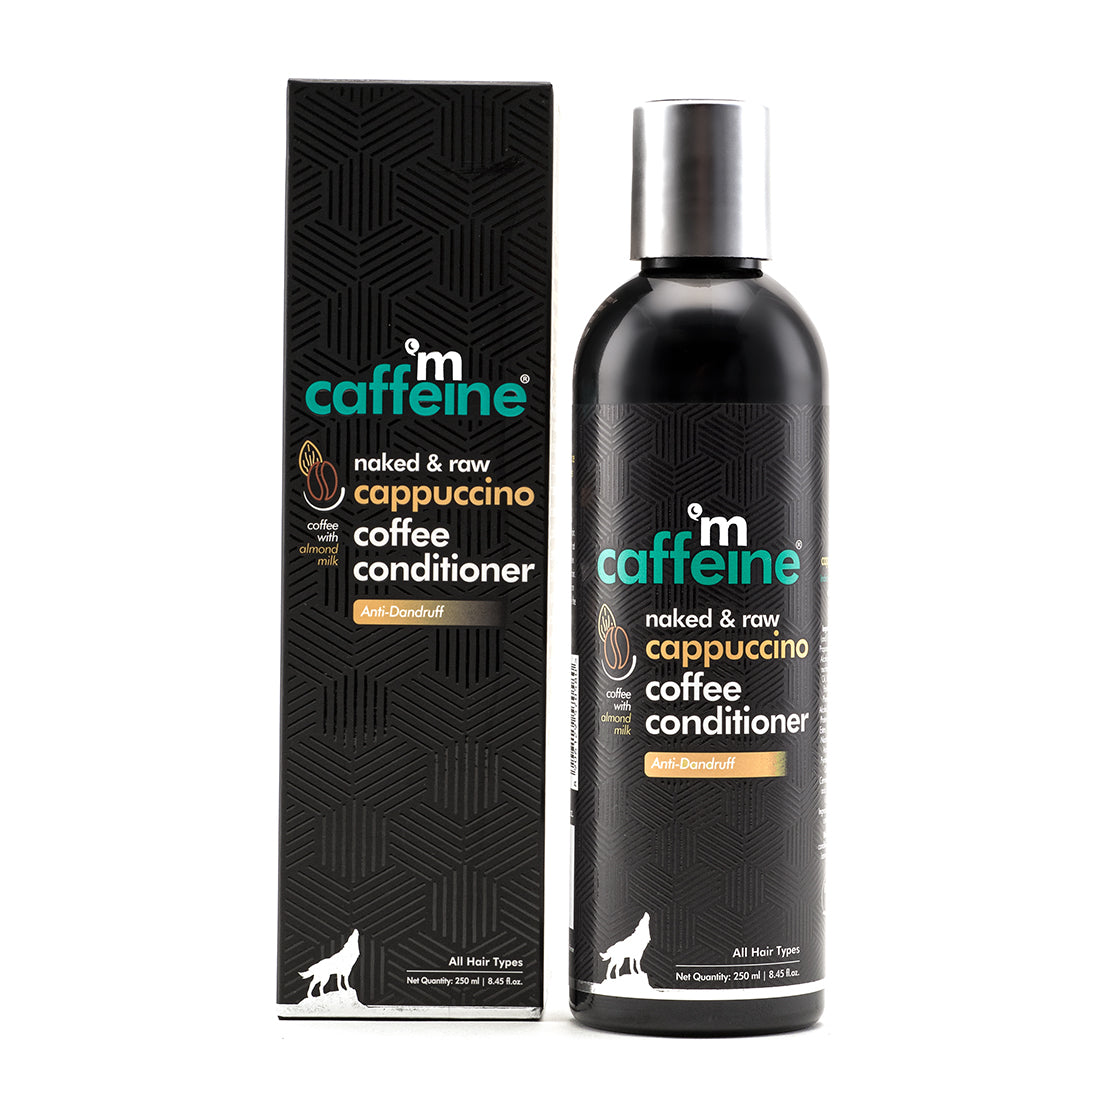 mCaffeine Coffee Hair Conditioner